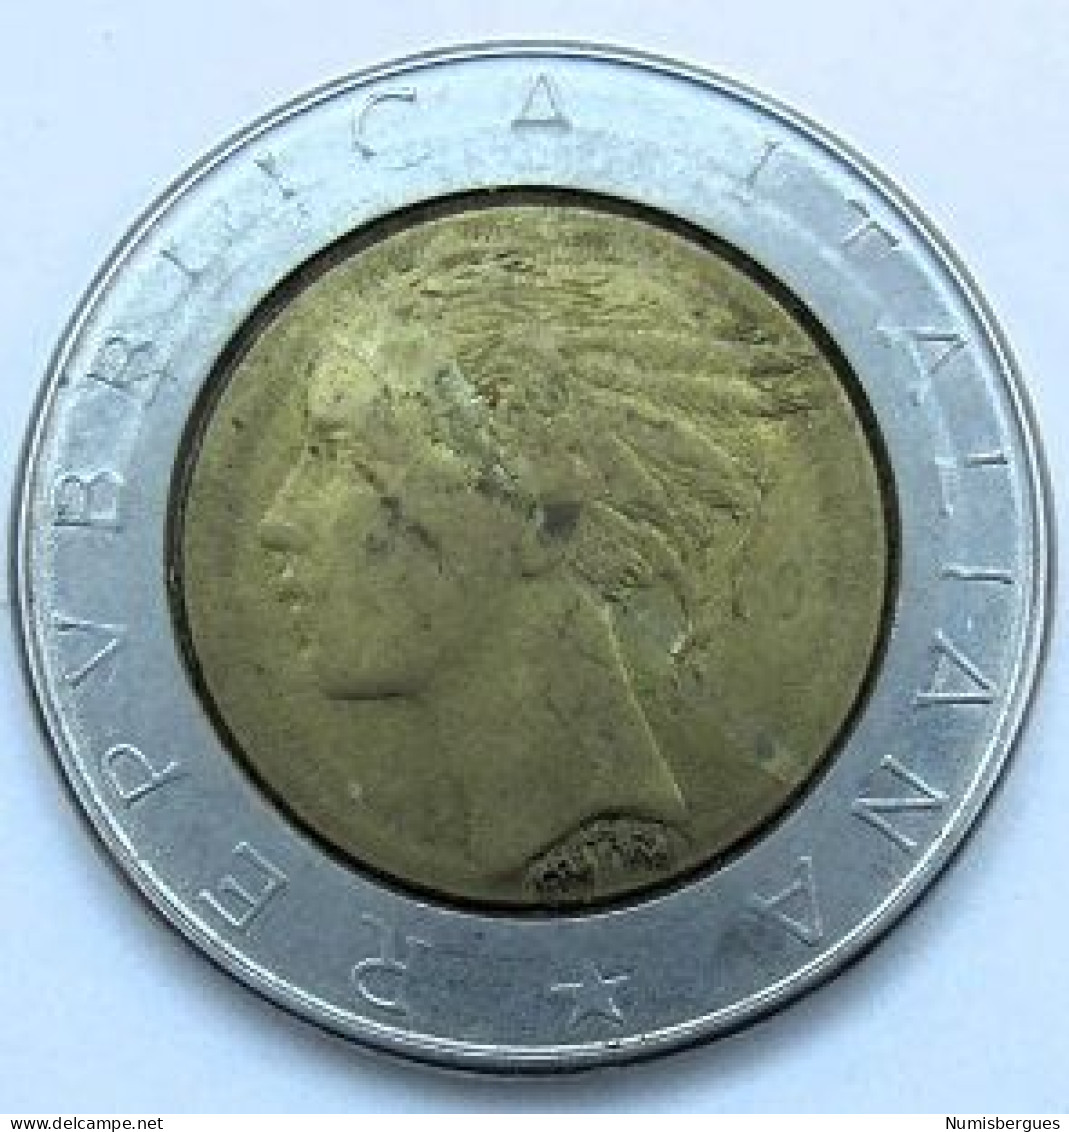 Pièce De Monnaie 500 Lire 1983 - 500 Liras